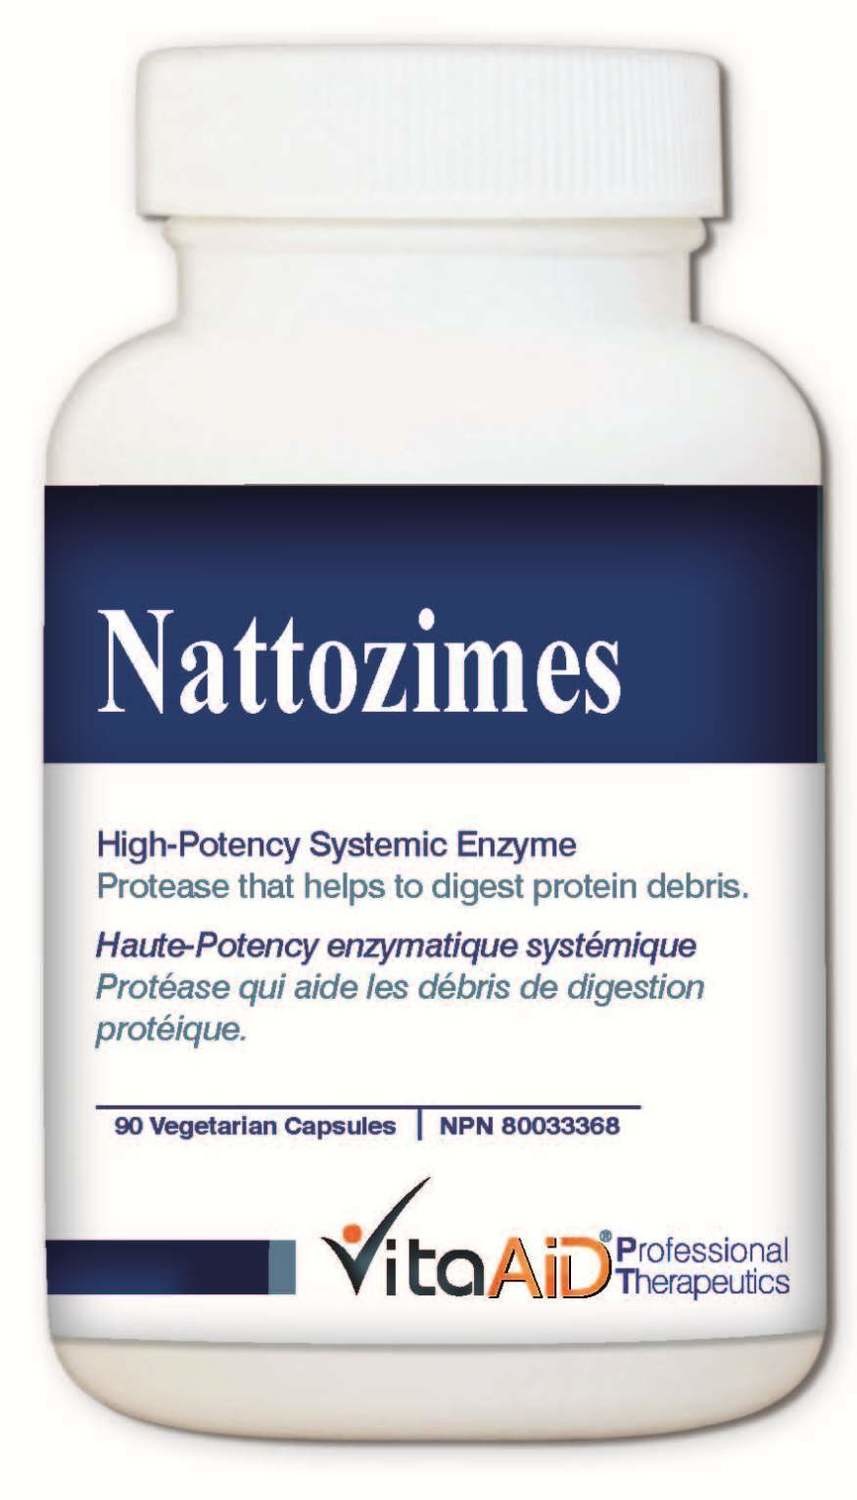 Nattozimes